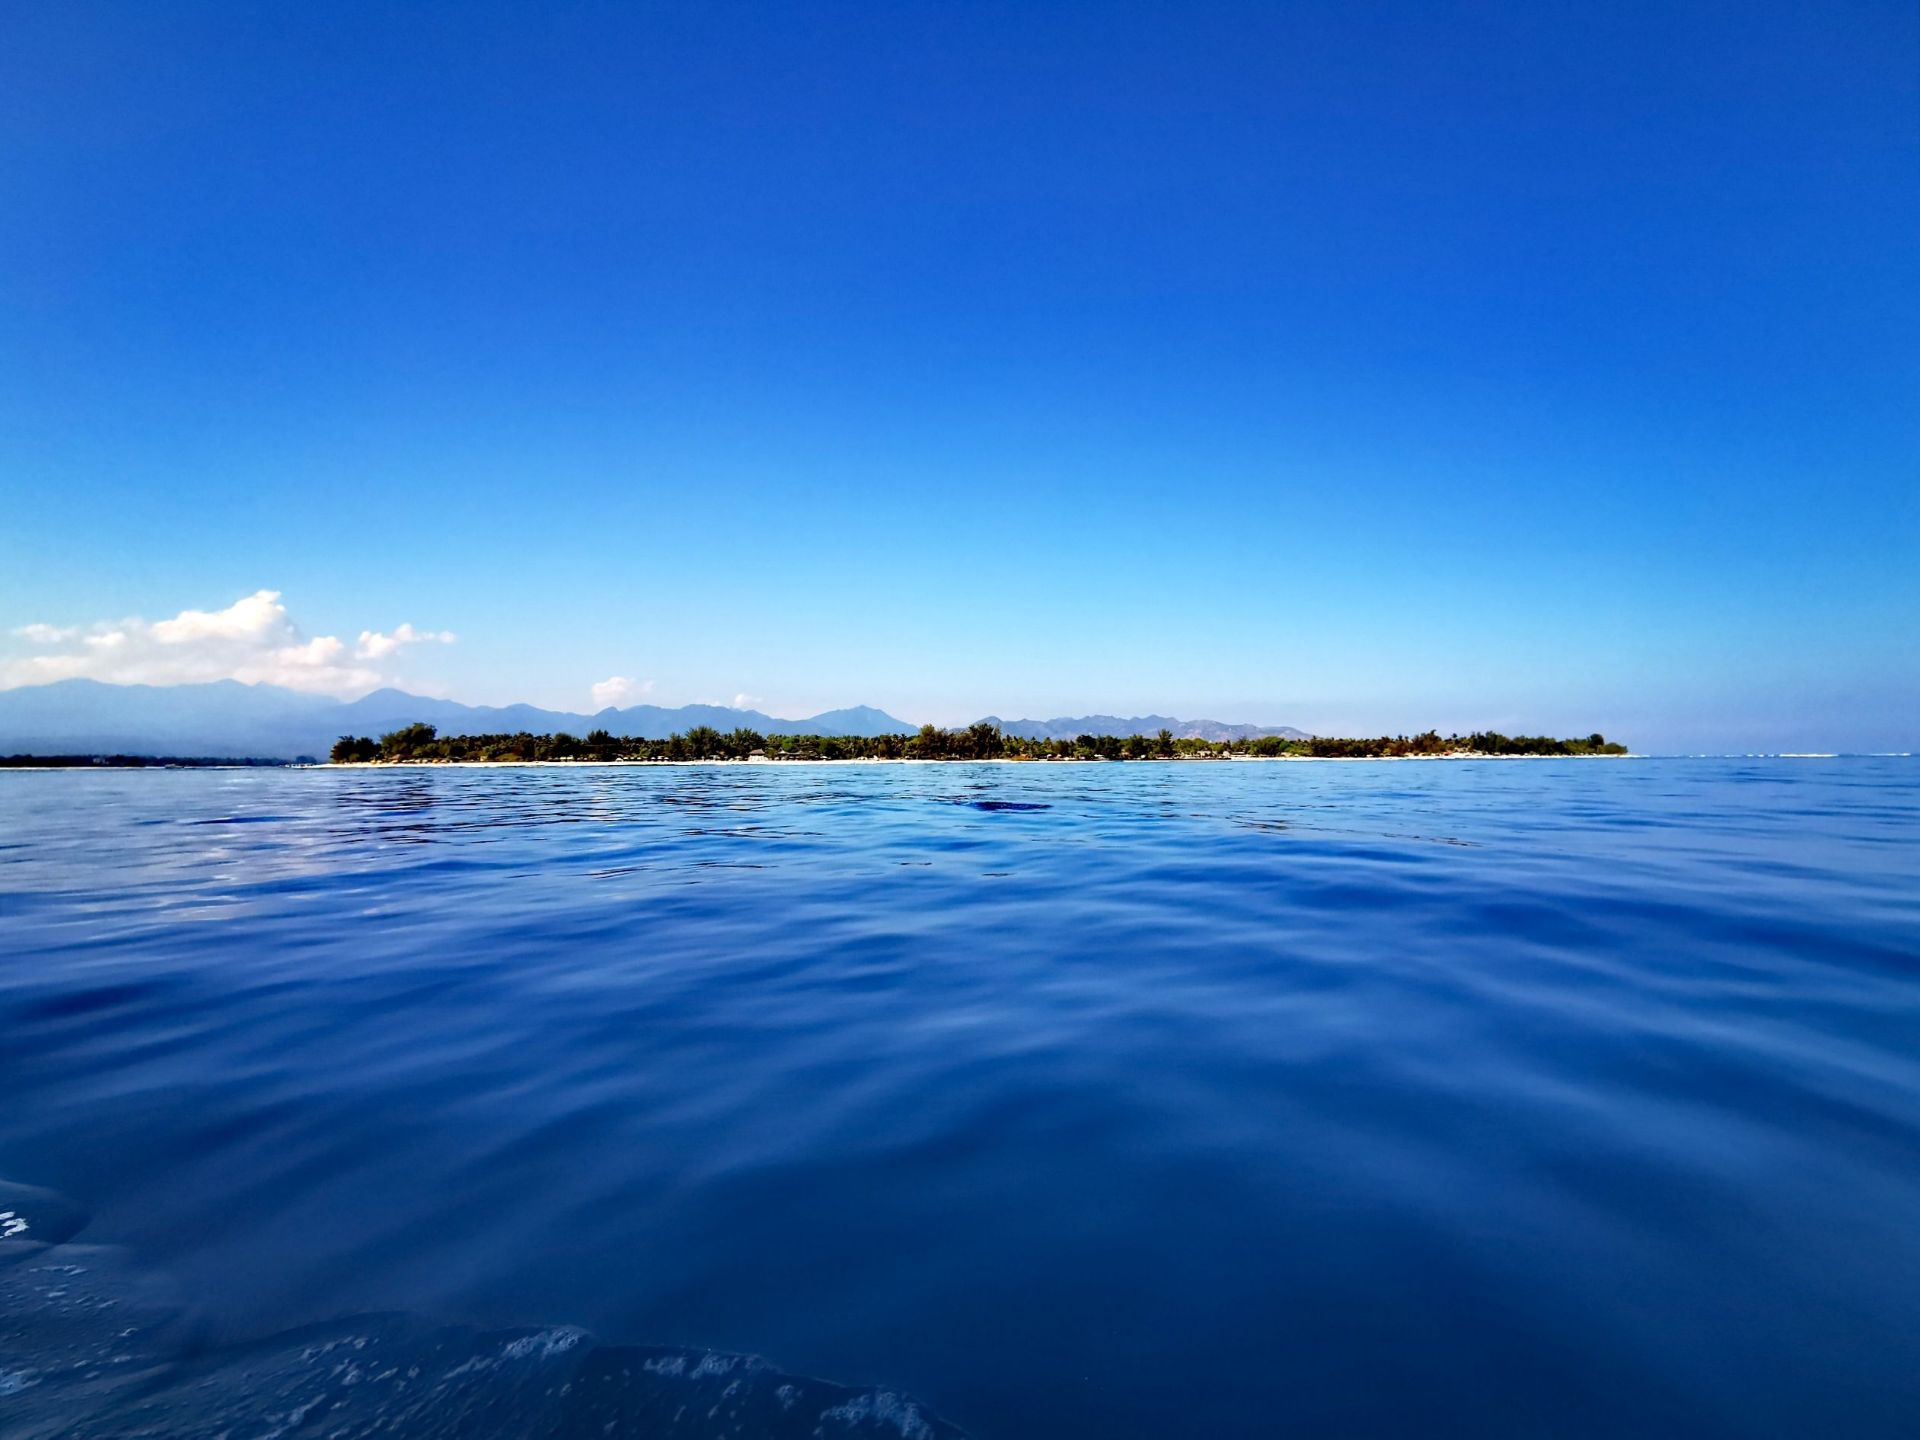 龙目岛附近的三个小岛，需要坐船过去。岛上欧美人为主，很田园的小岛，很漂亮。附近适合浮潜，深潜，日光浴